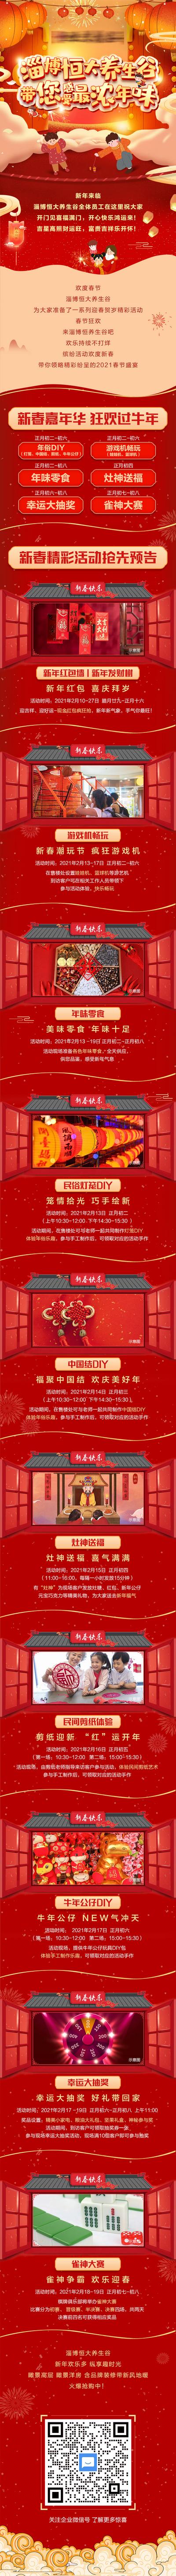 【南门网】专题设计 长图 房地产 红包墙 新春 中国结 宫灯 暖场活动